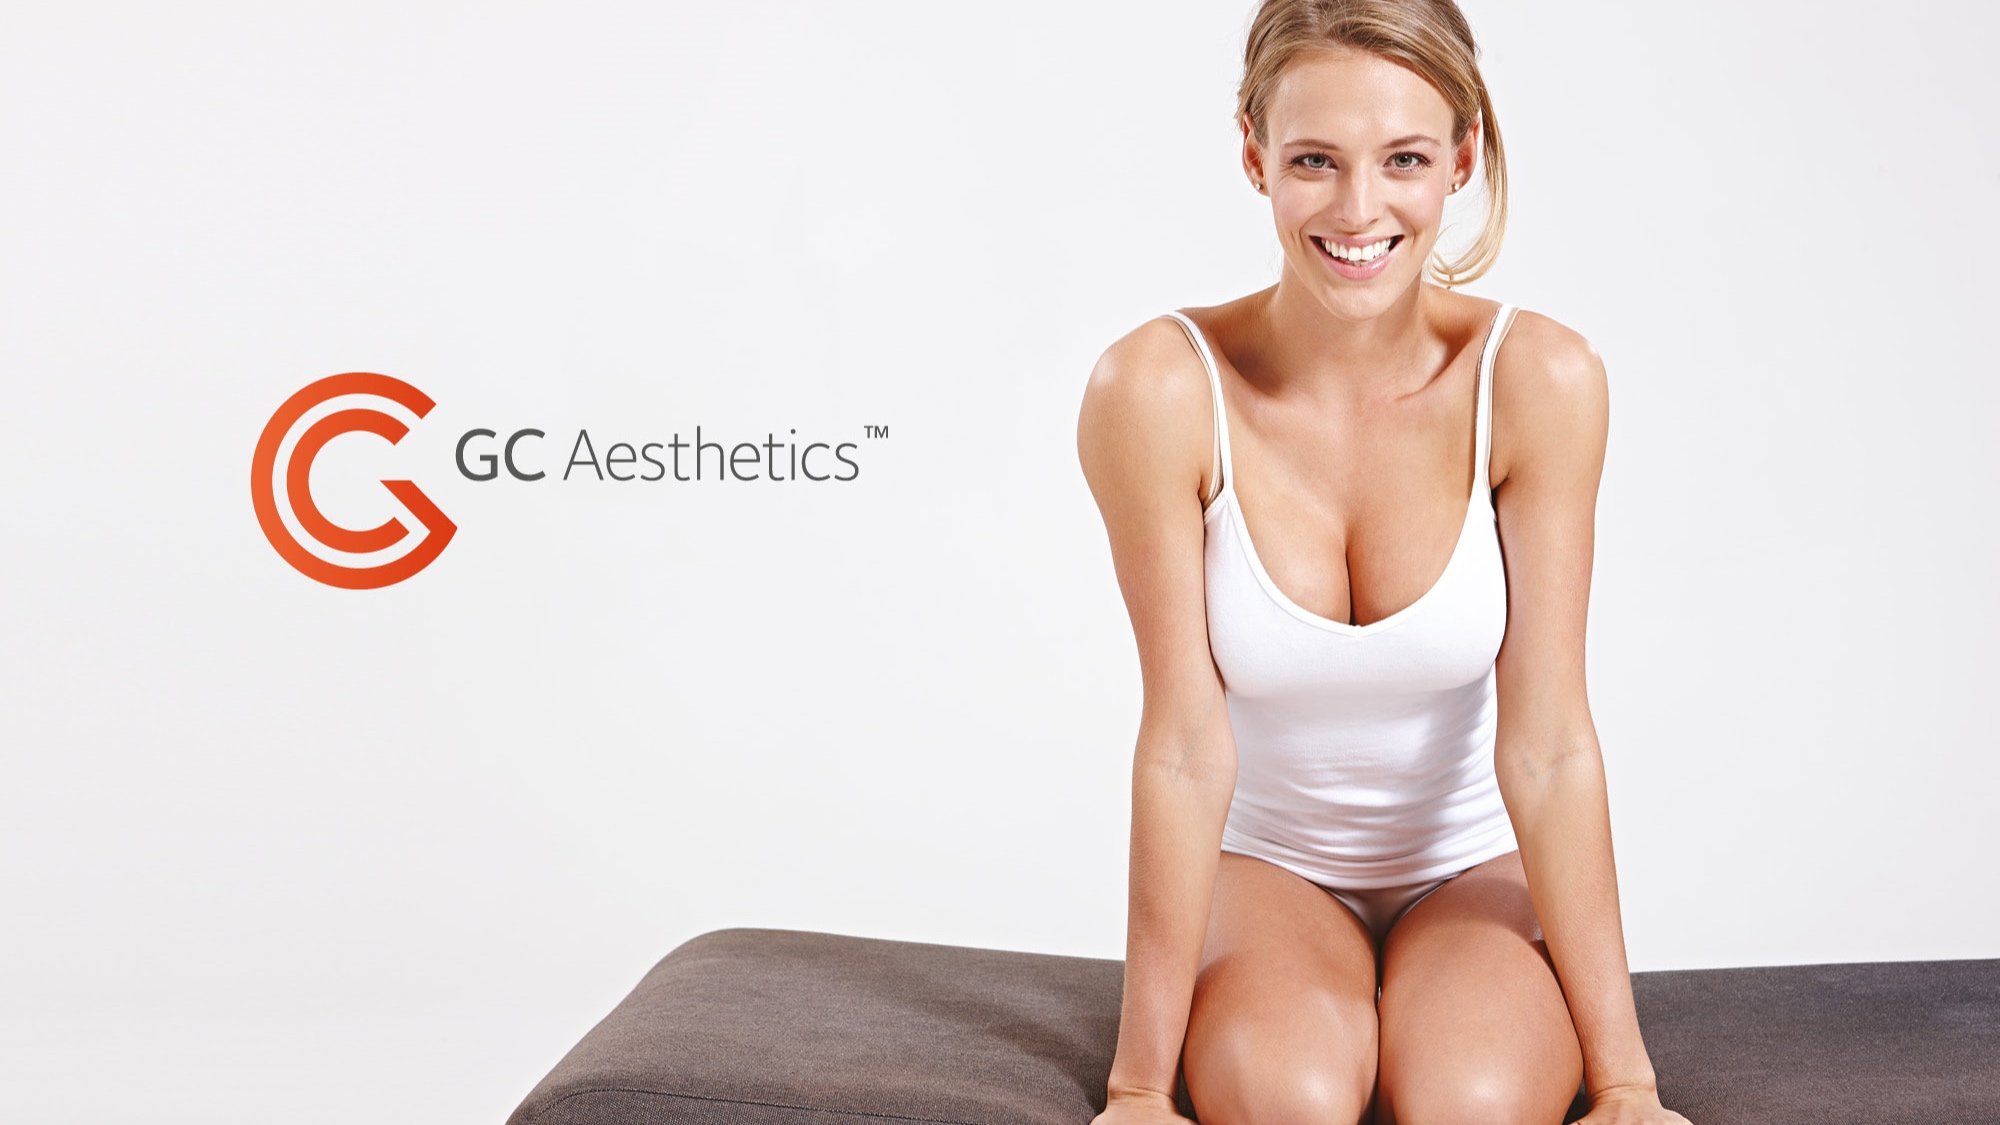 GC Aesthetics Rebrand